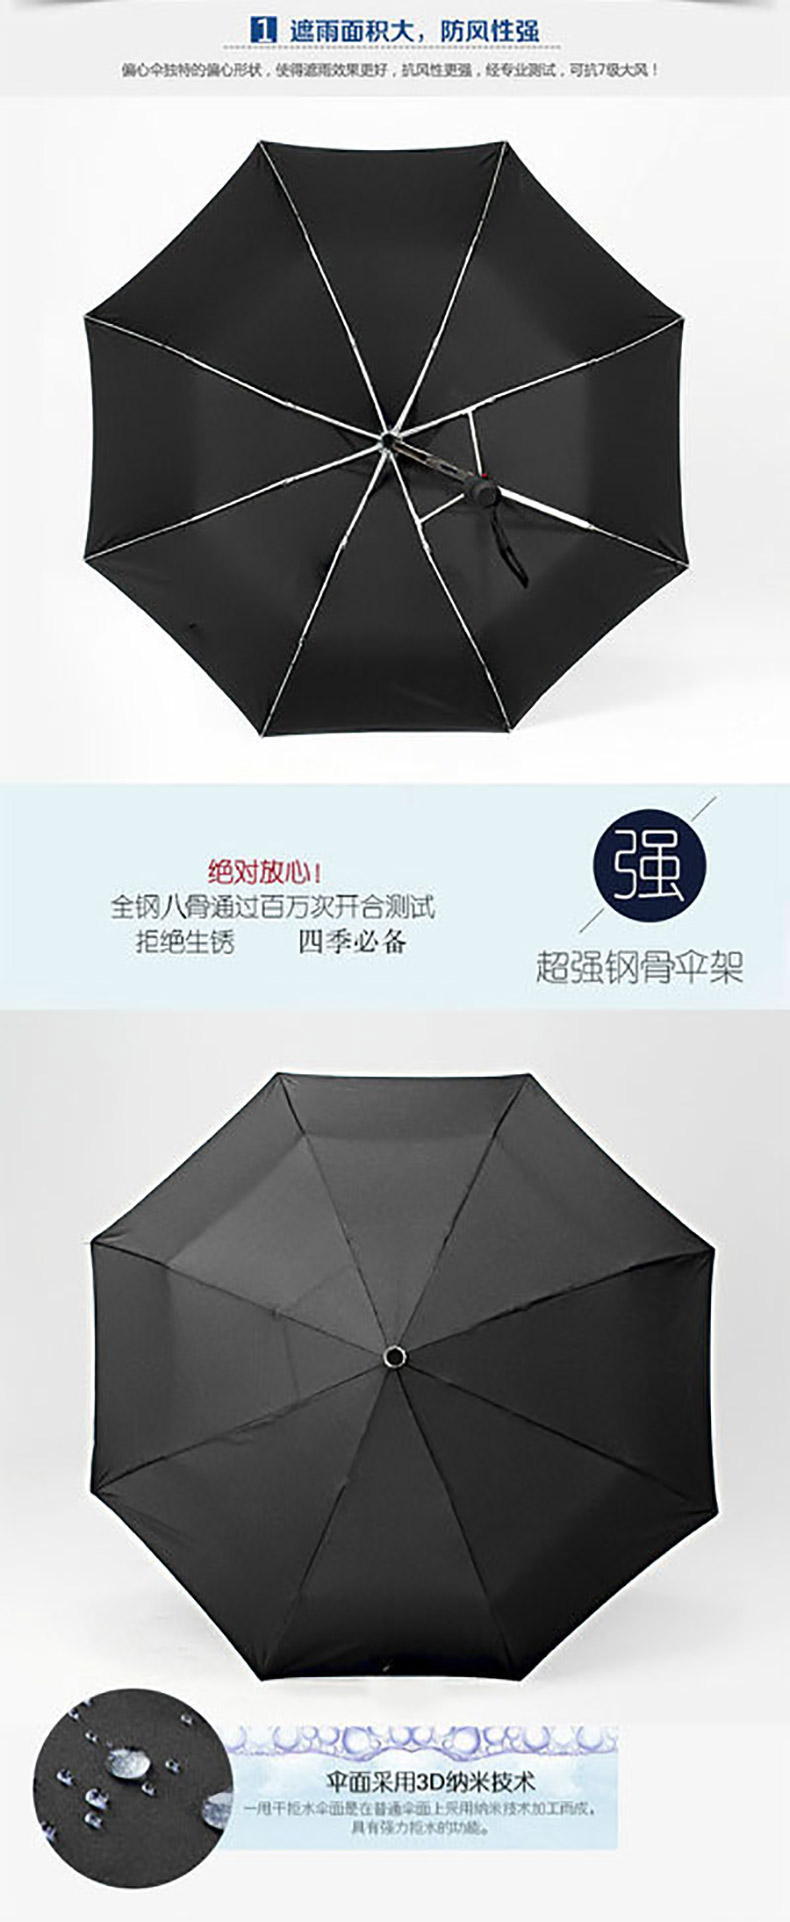 创意手动偏心伞定制 黑胶布折叠雨伞定制logo 黑色商务8骨三折雨伞批发